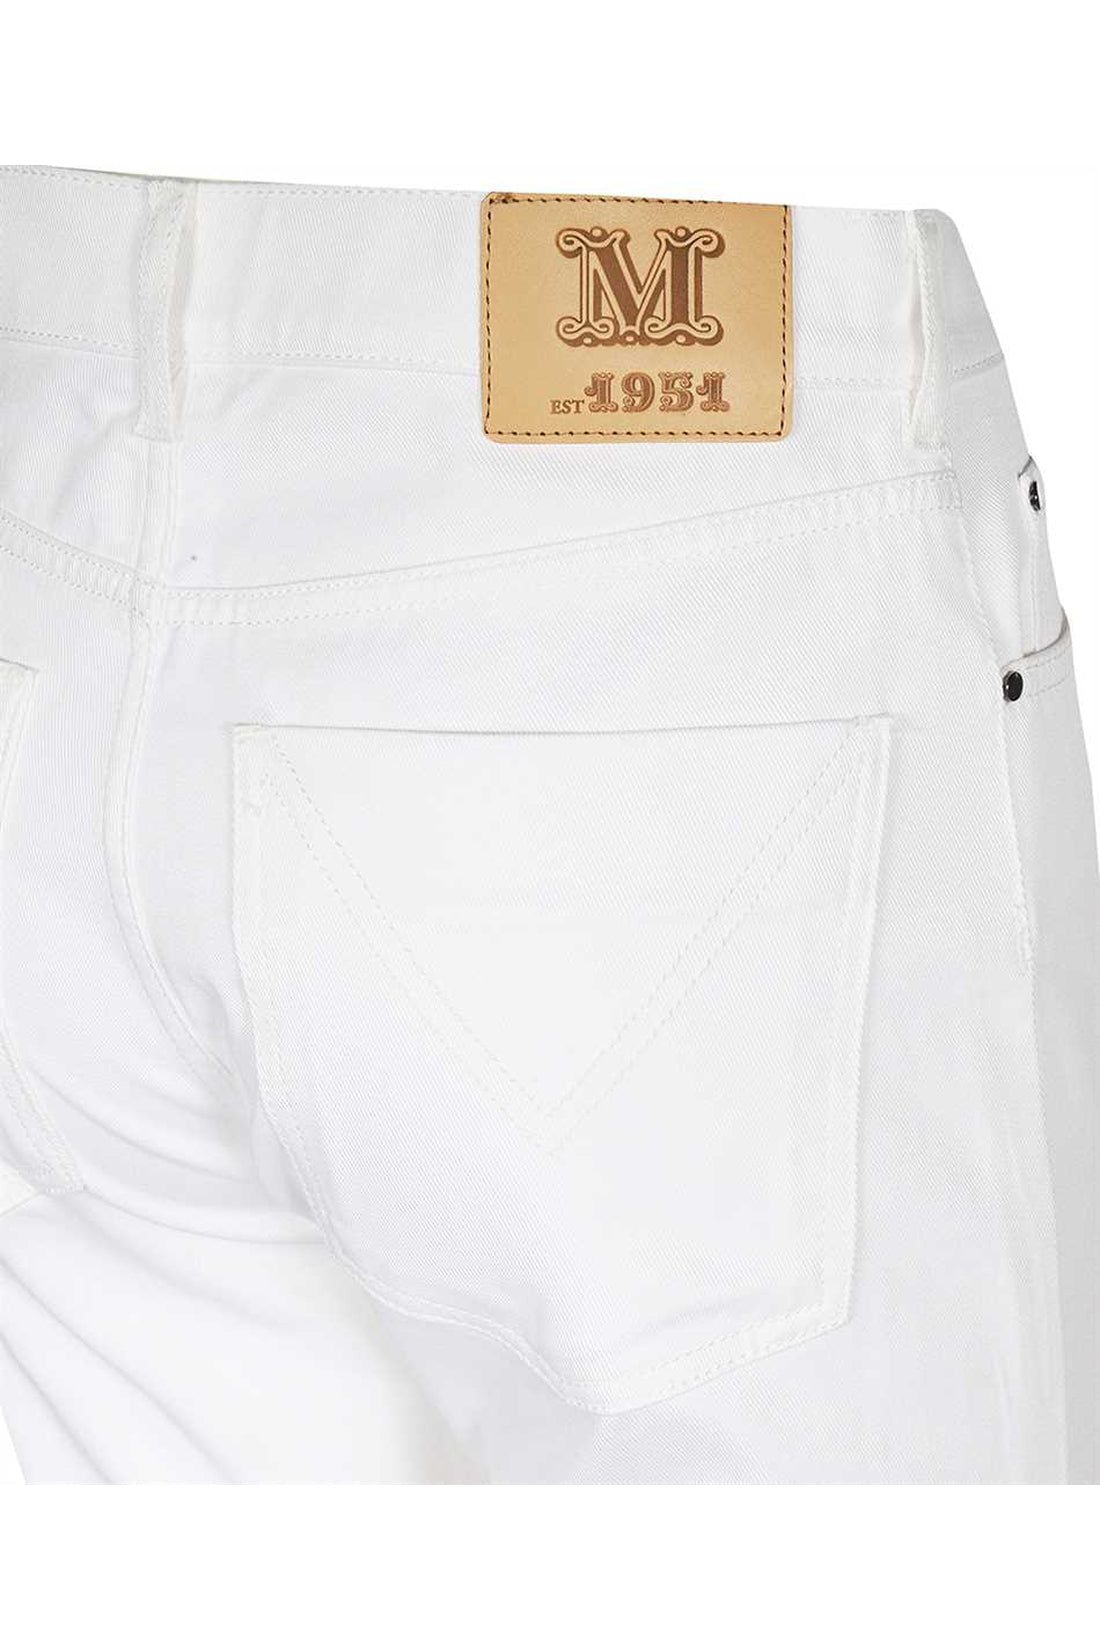 Max Mara-OUTLET-SALE-Caprile boyfriend jeans-ARCHIVIST